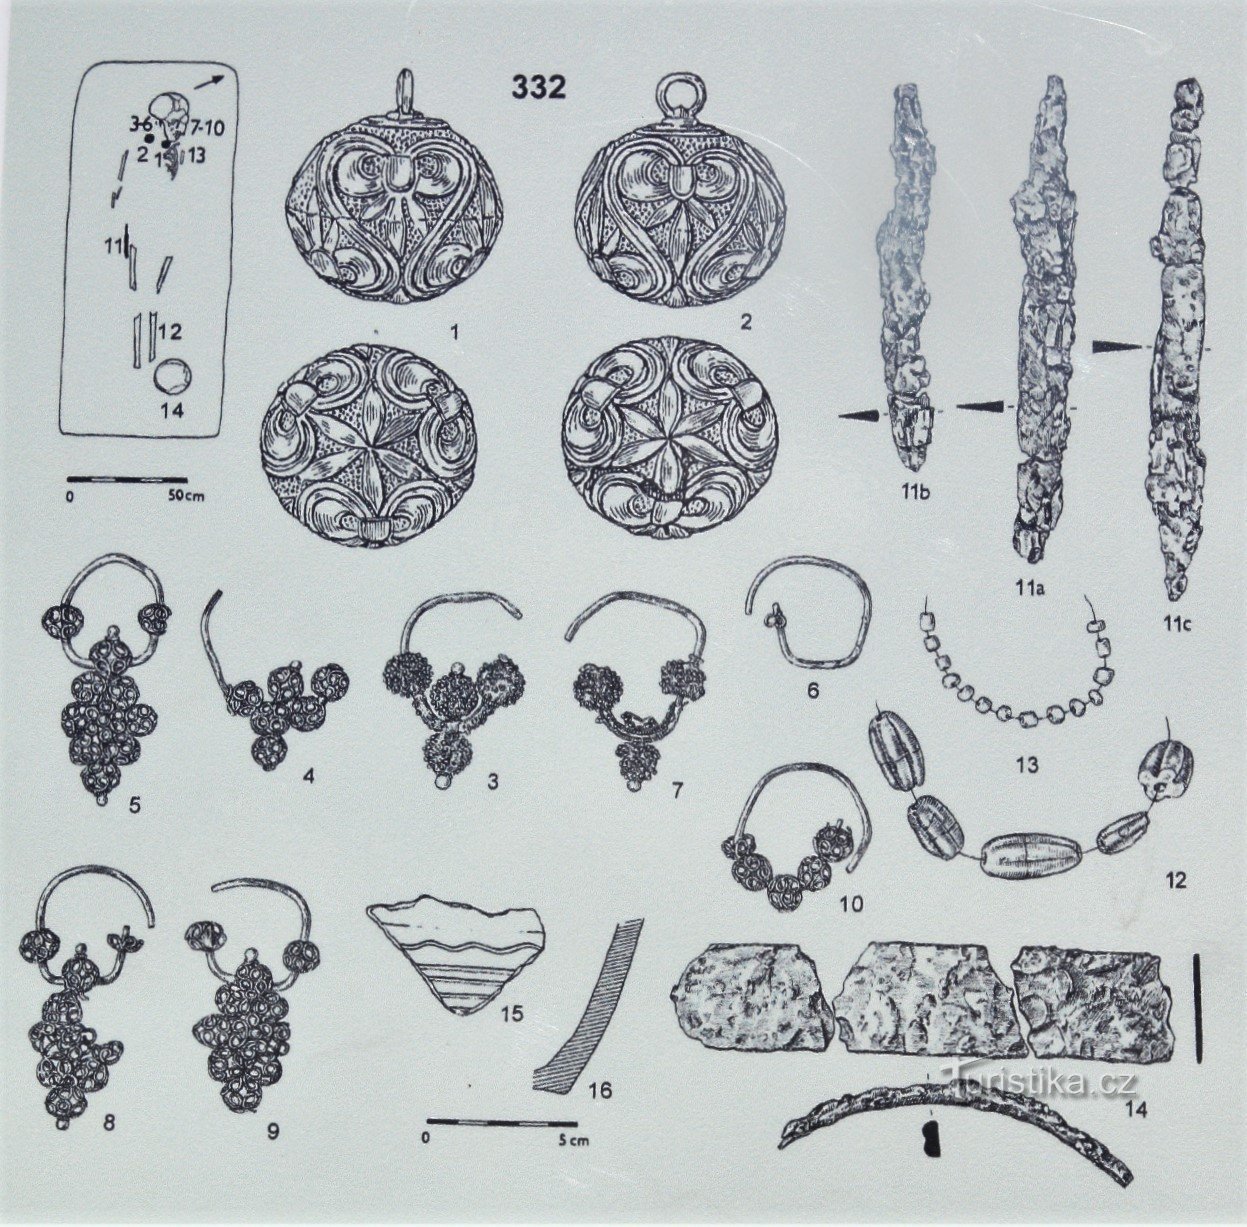 Znaleziska biżuterii z wykopalisk tutaj (zaczerpnięte z panelu informacyjnego)